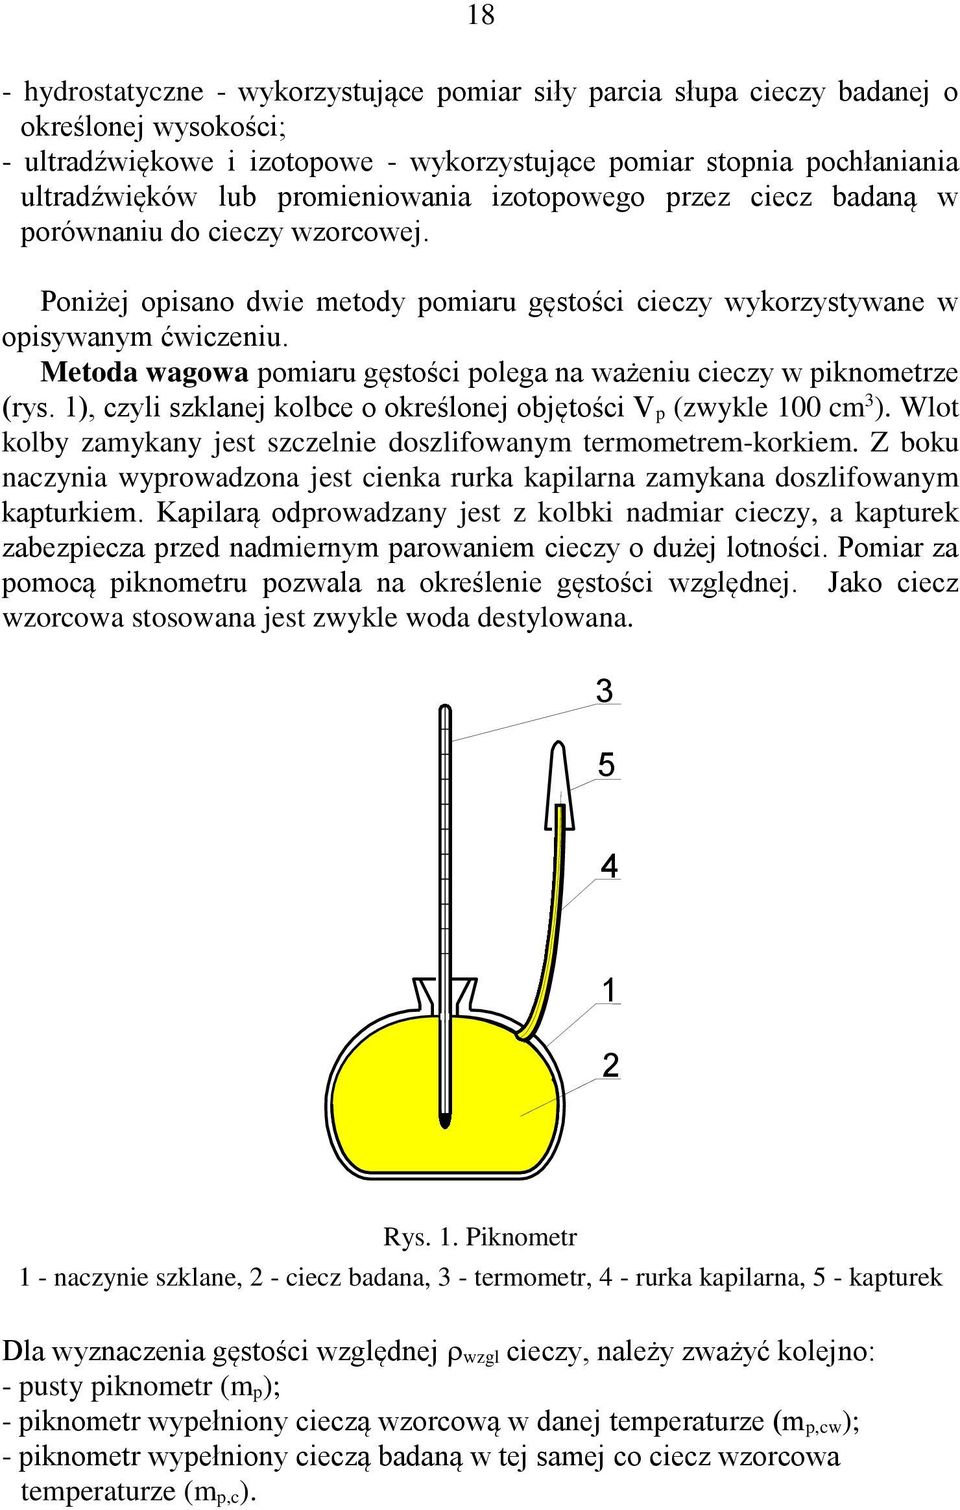 Metoda wagowa pomiaru gęstości polega na ważeniu cieczy w piknometrze (rys. 1), czyli szklanej kolbce o określonej objętości V p (zwykle 100 cm 3 ).